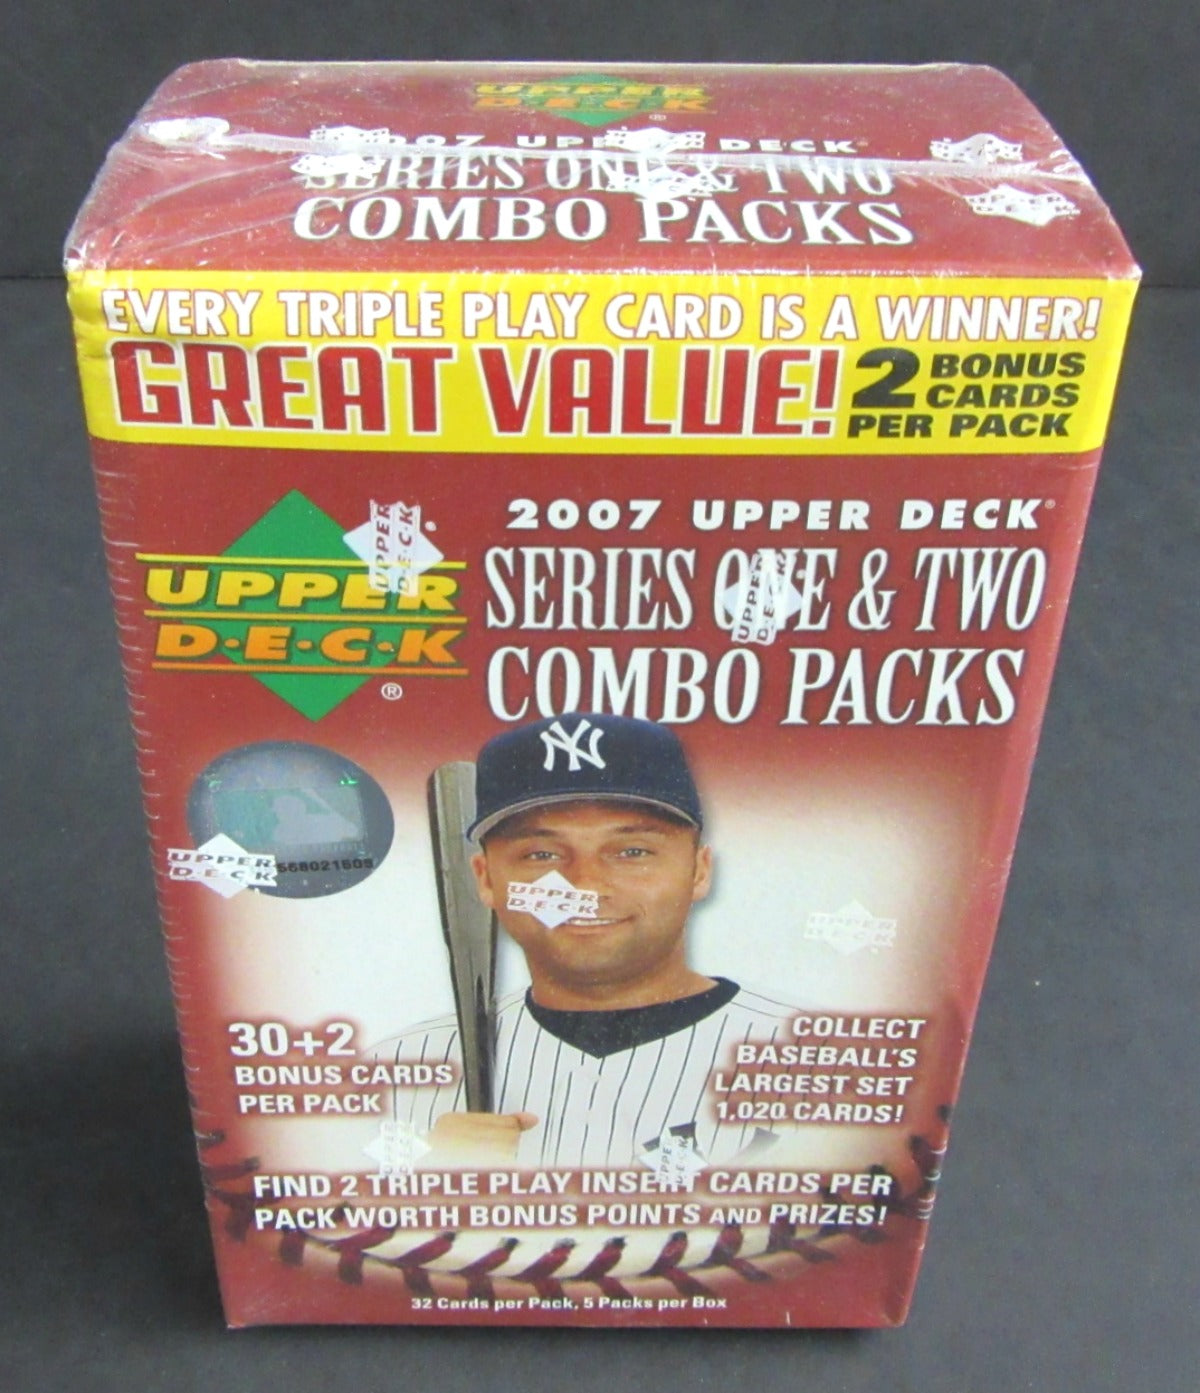 2007 Upper Deck Baseball Series 1 & 2 Combo Blaster Box (5/32)